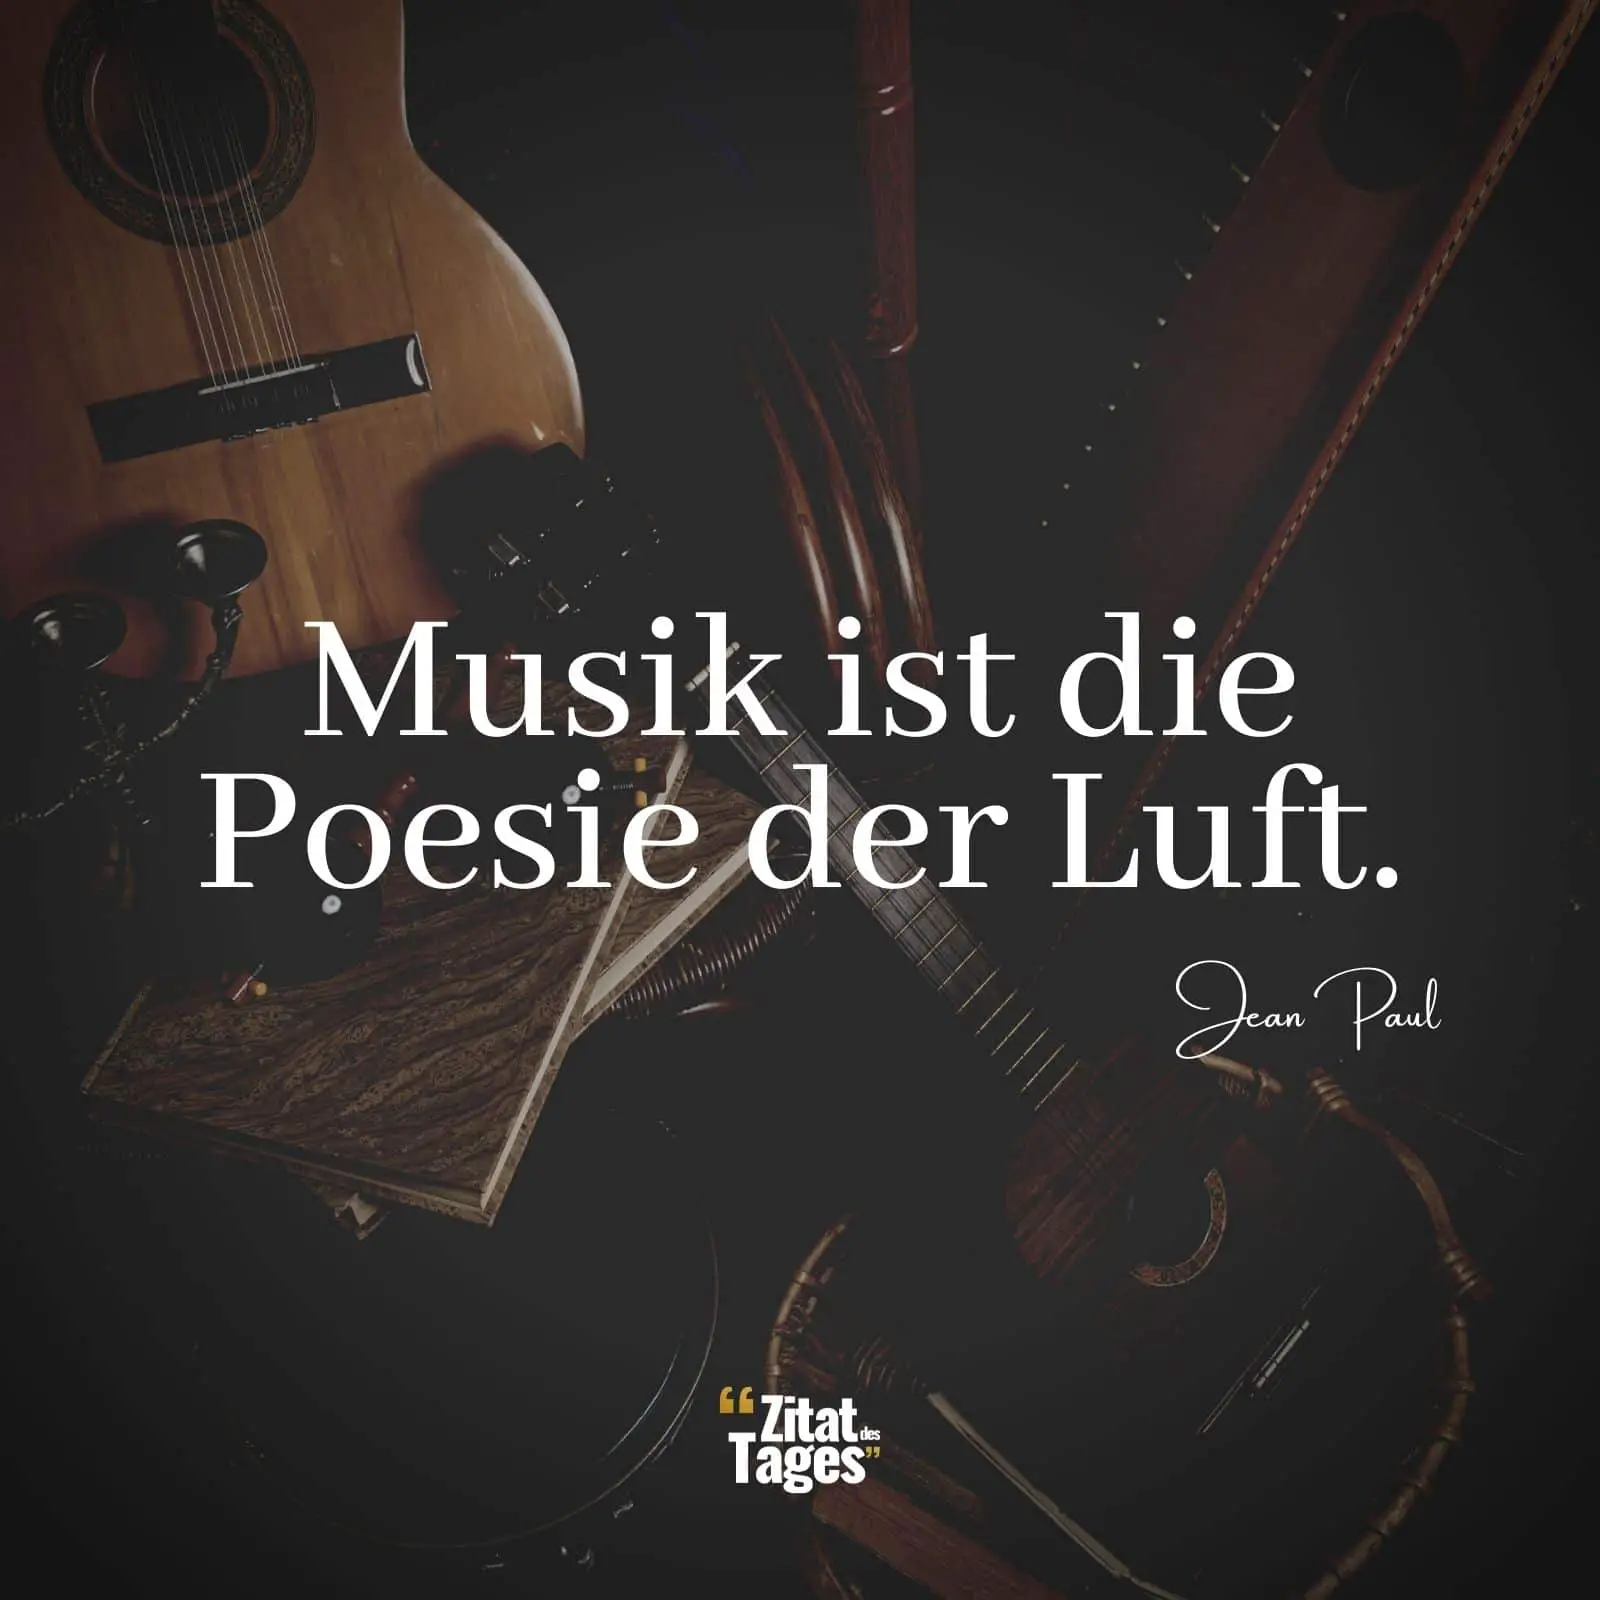 Musik ist die Poesie der Luft. - Jean Paul